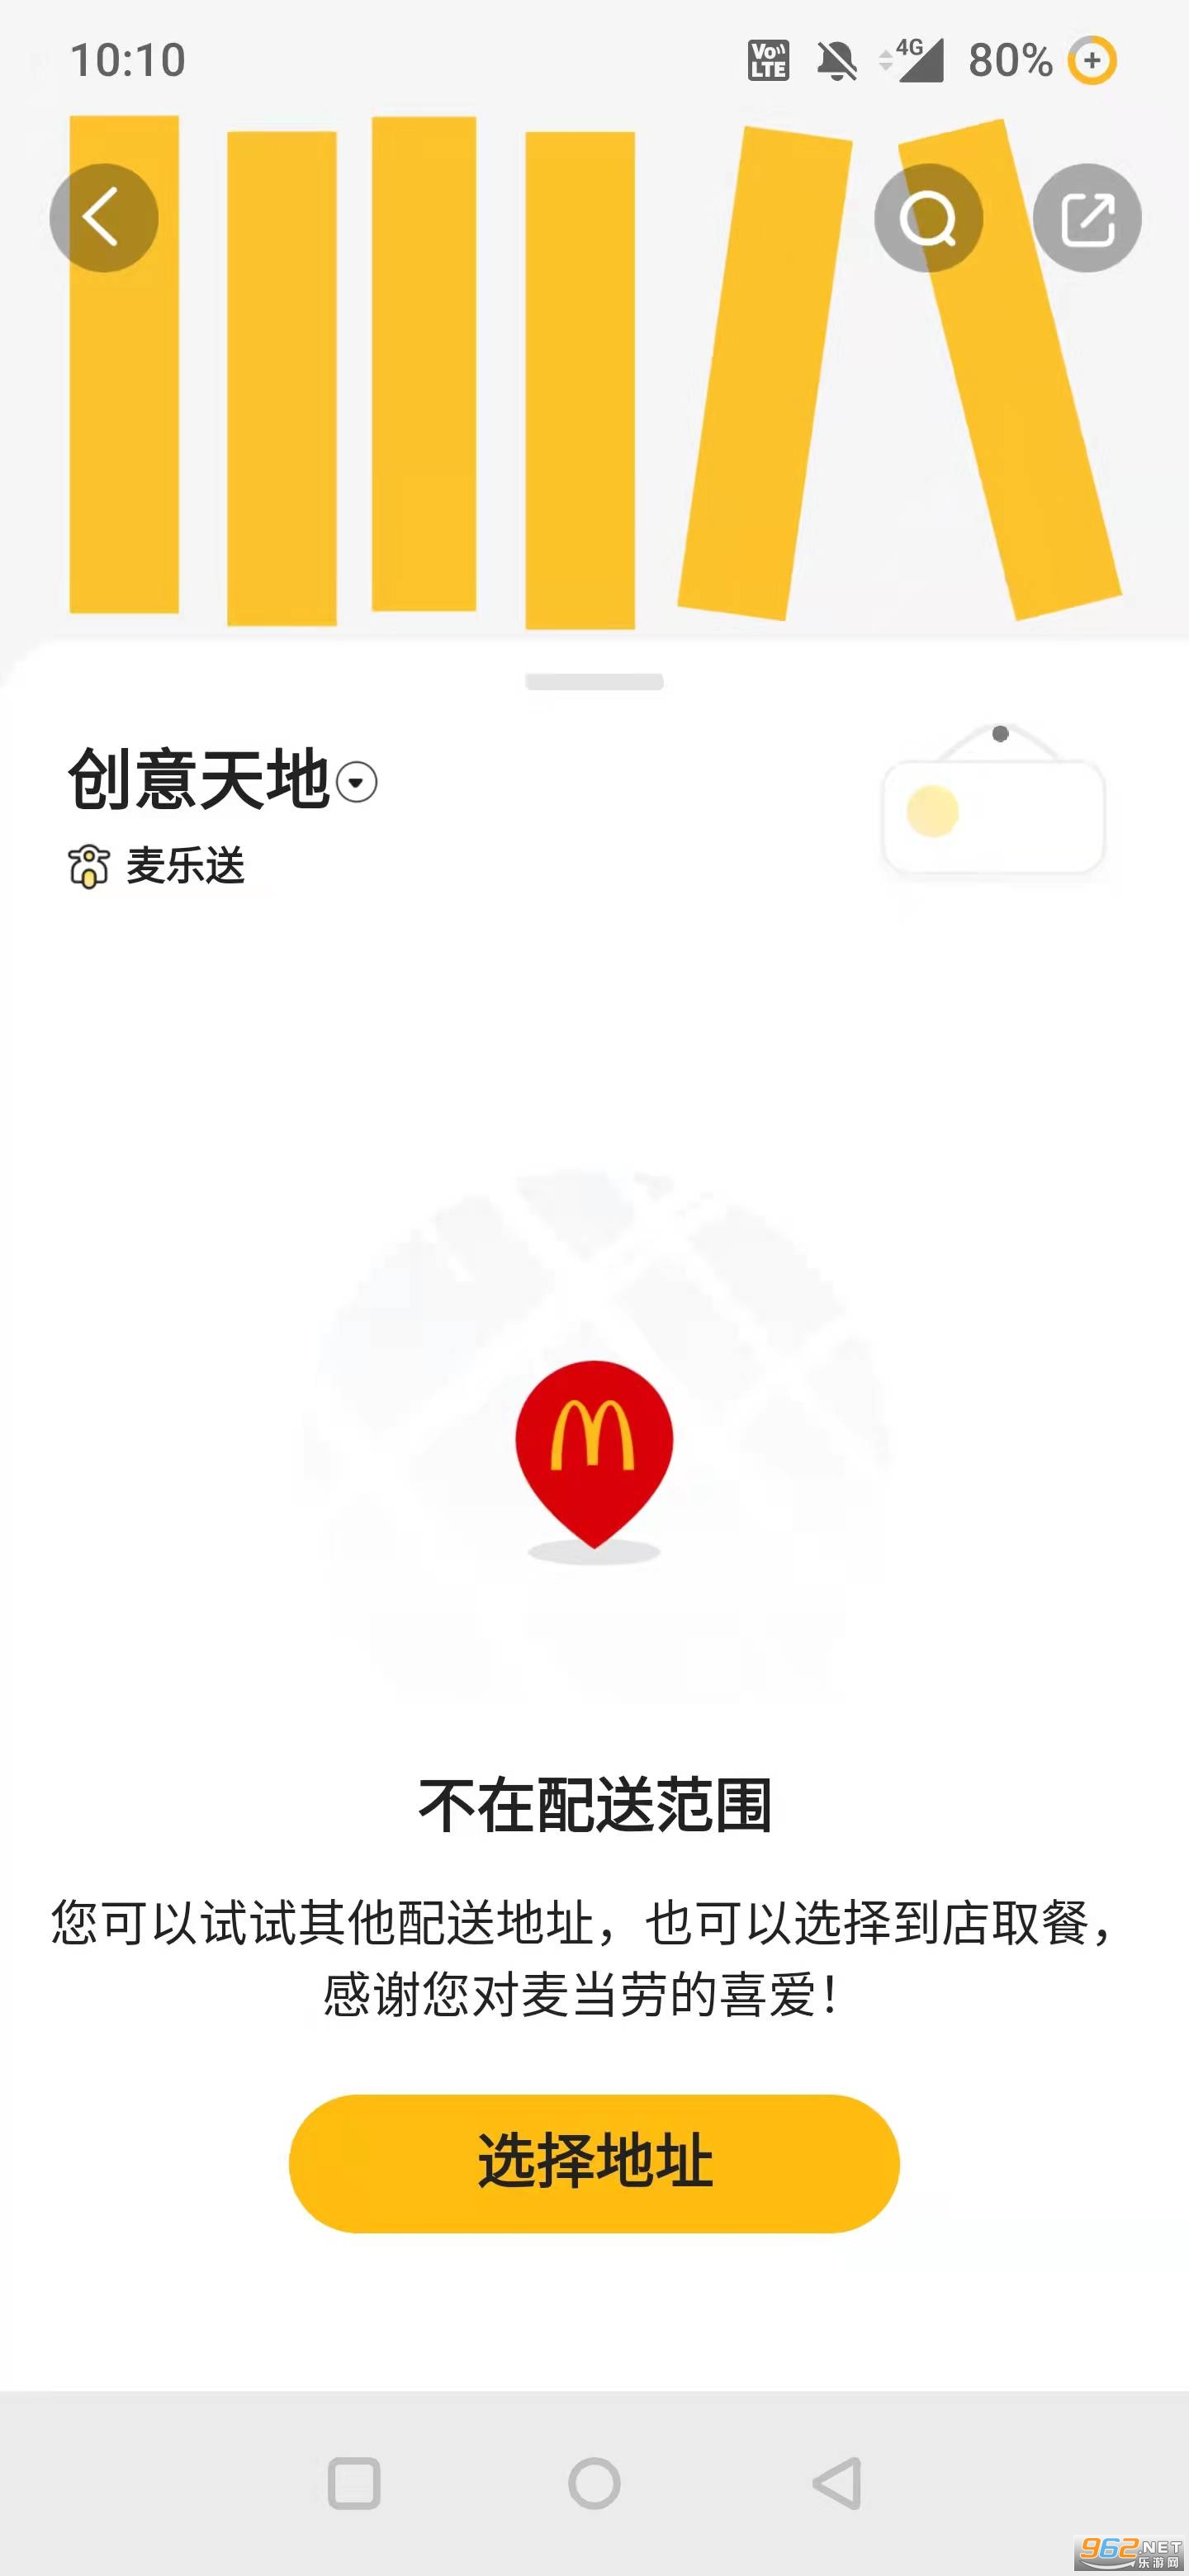 �����诰W上�餐appv6.0.34.0最新版本截�D0